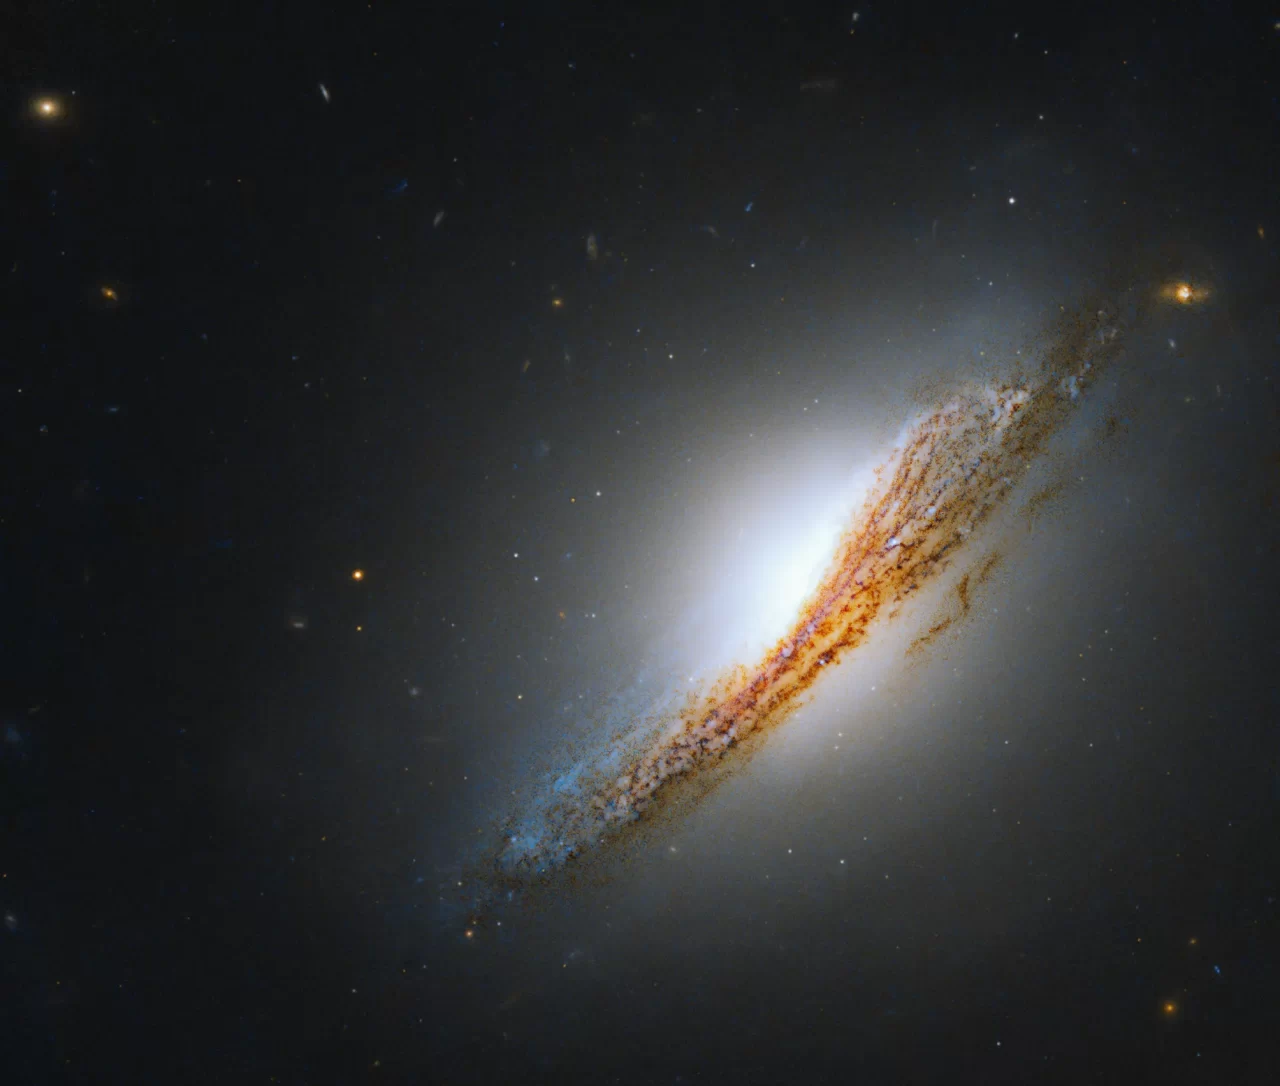 ハッブル宇宙望遠鏡が撮影した“ちょうこくしつ座”の活動的なレンズ状銀河